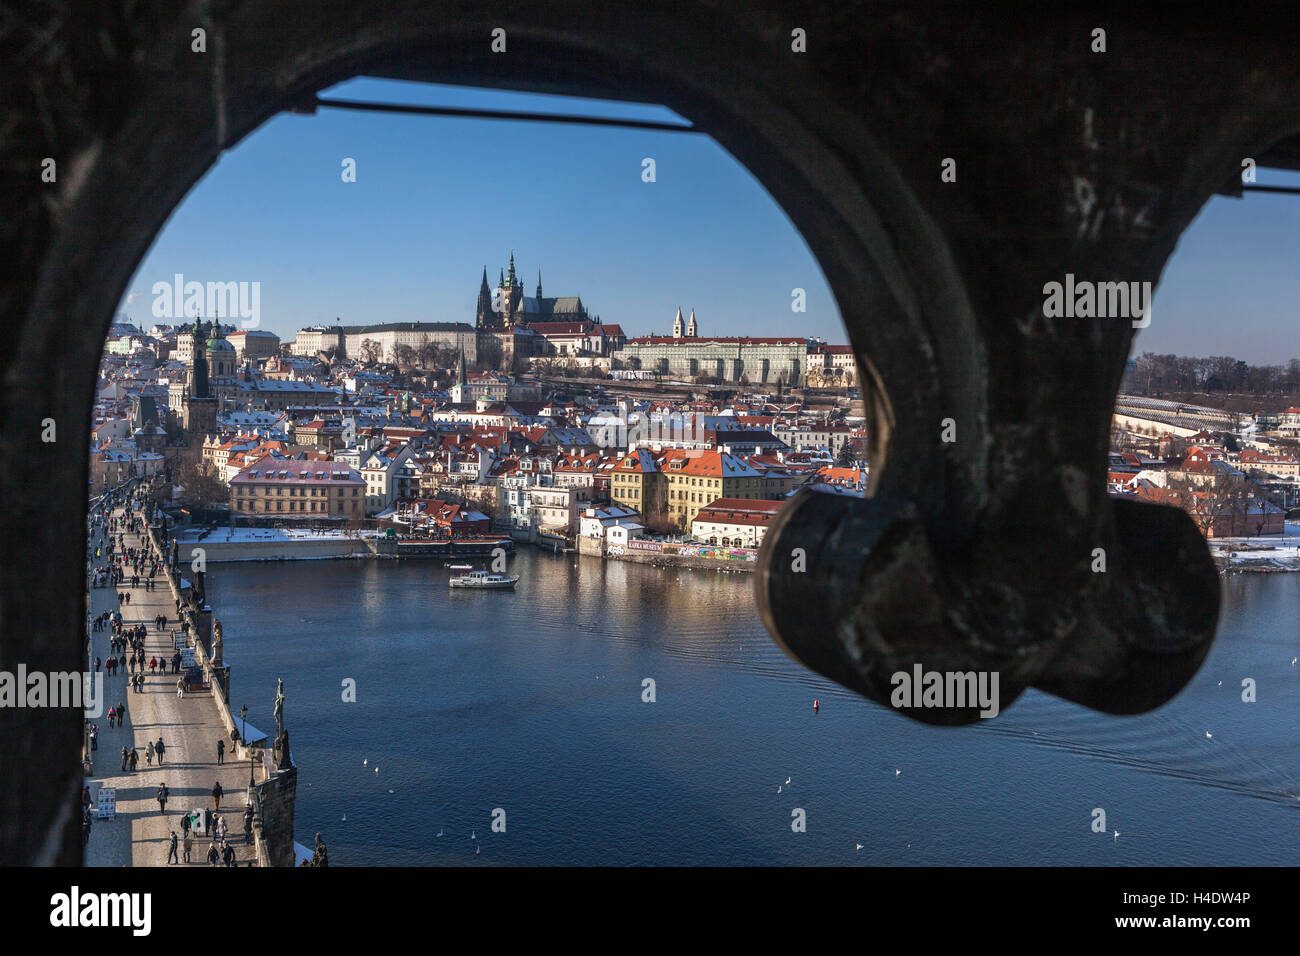 Vue sur le château de Prague depuis une fenêtre sur la rivière de la vieille ville Tour du Pont Charles, Mala Strana District Hradcany Prague architecture de la République tchèque Banque D'Images